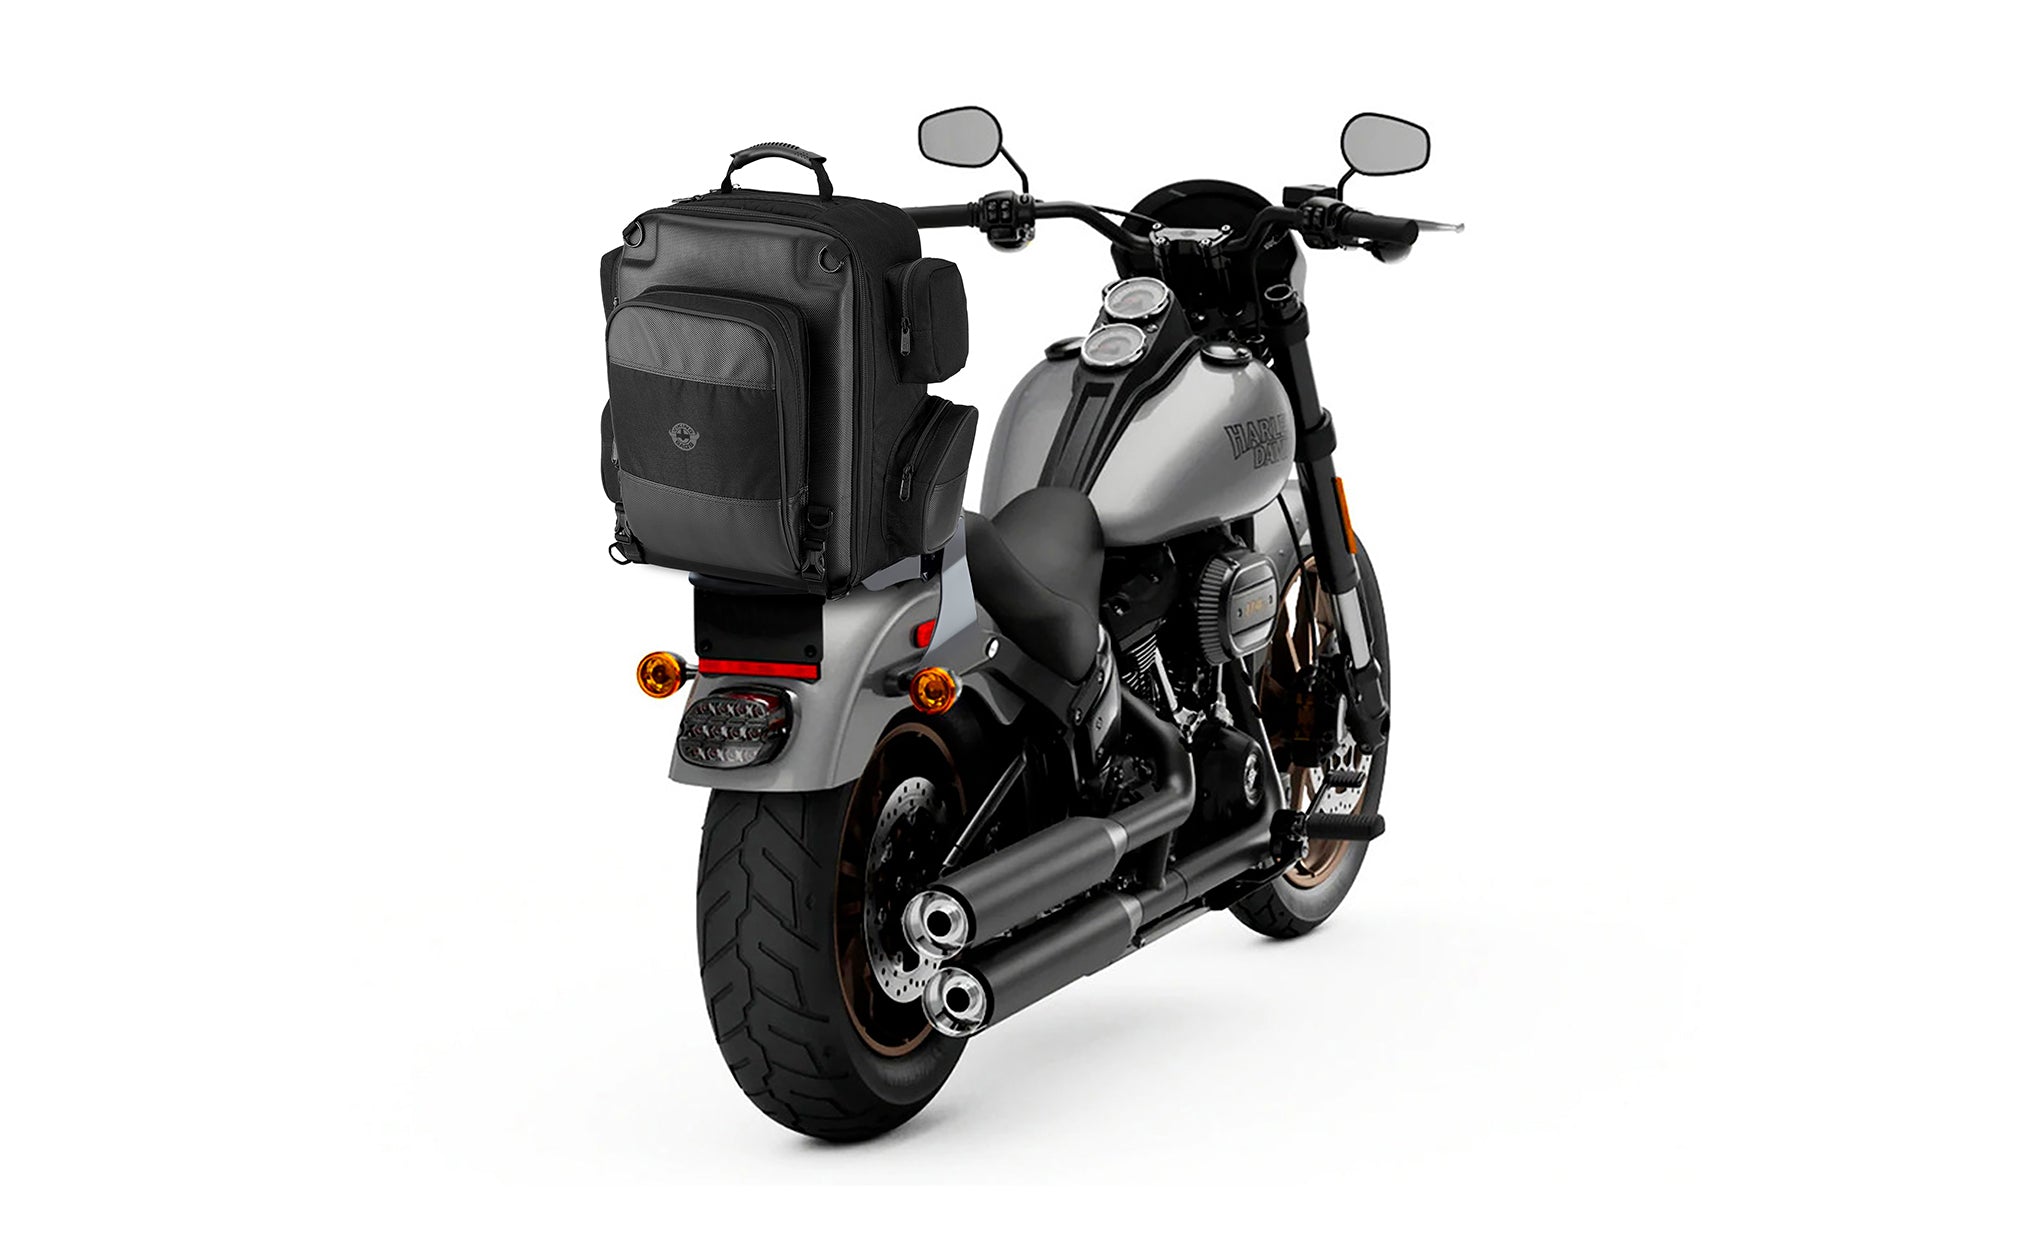 Viking Voyage Large Yamaha Motorcycle Tail Bag Bag on Bike View @expand